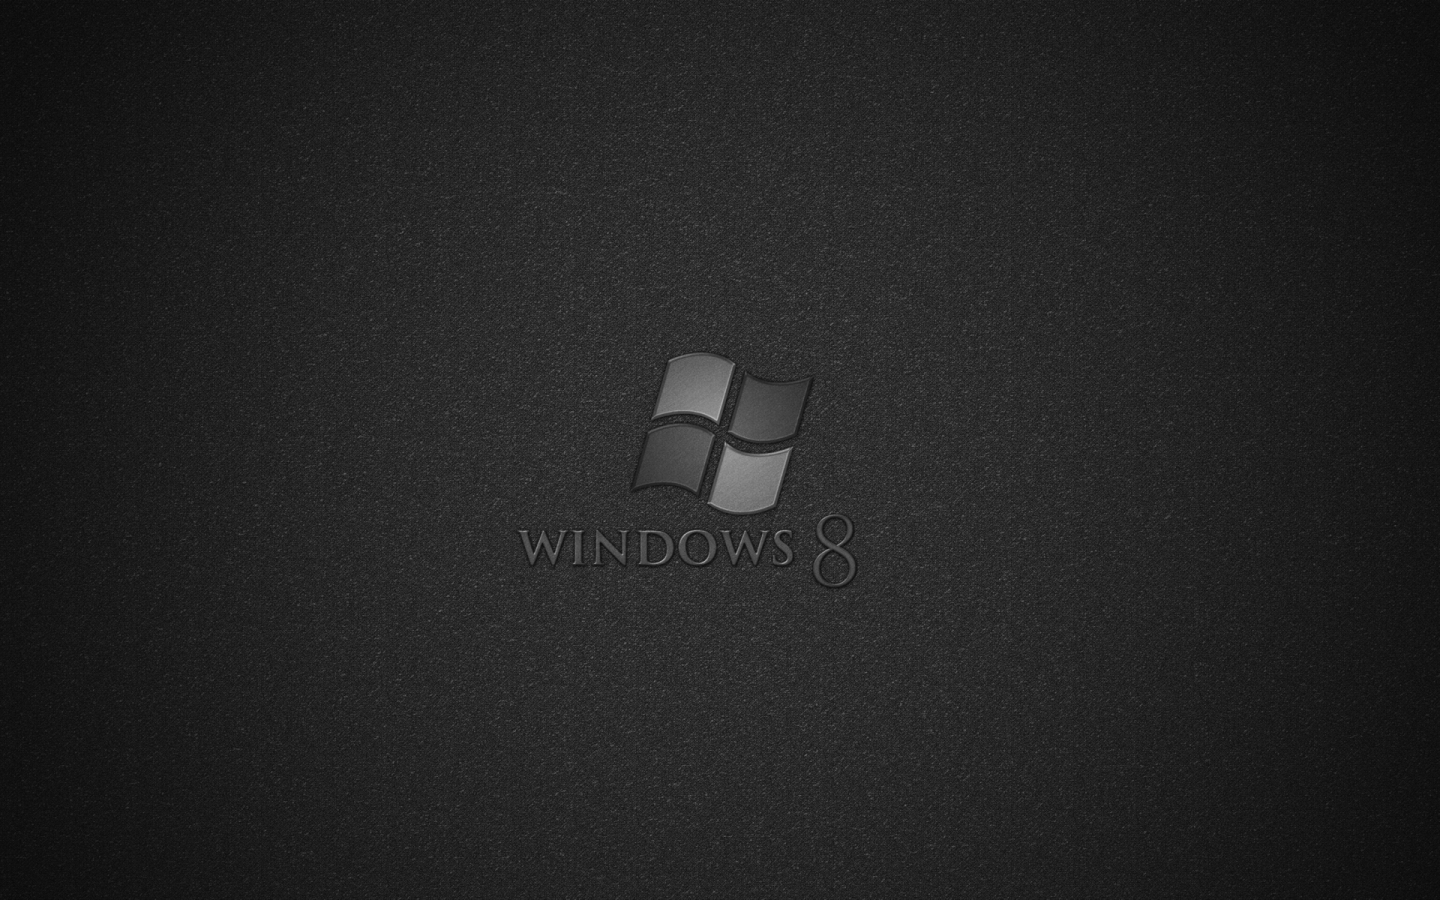 Windows 8 Tech for 1440 x 900 widescreen resolution